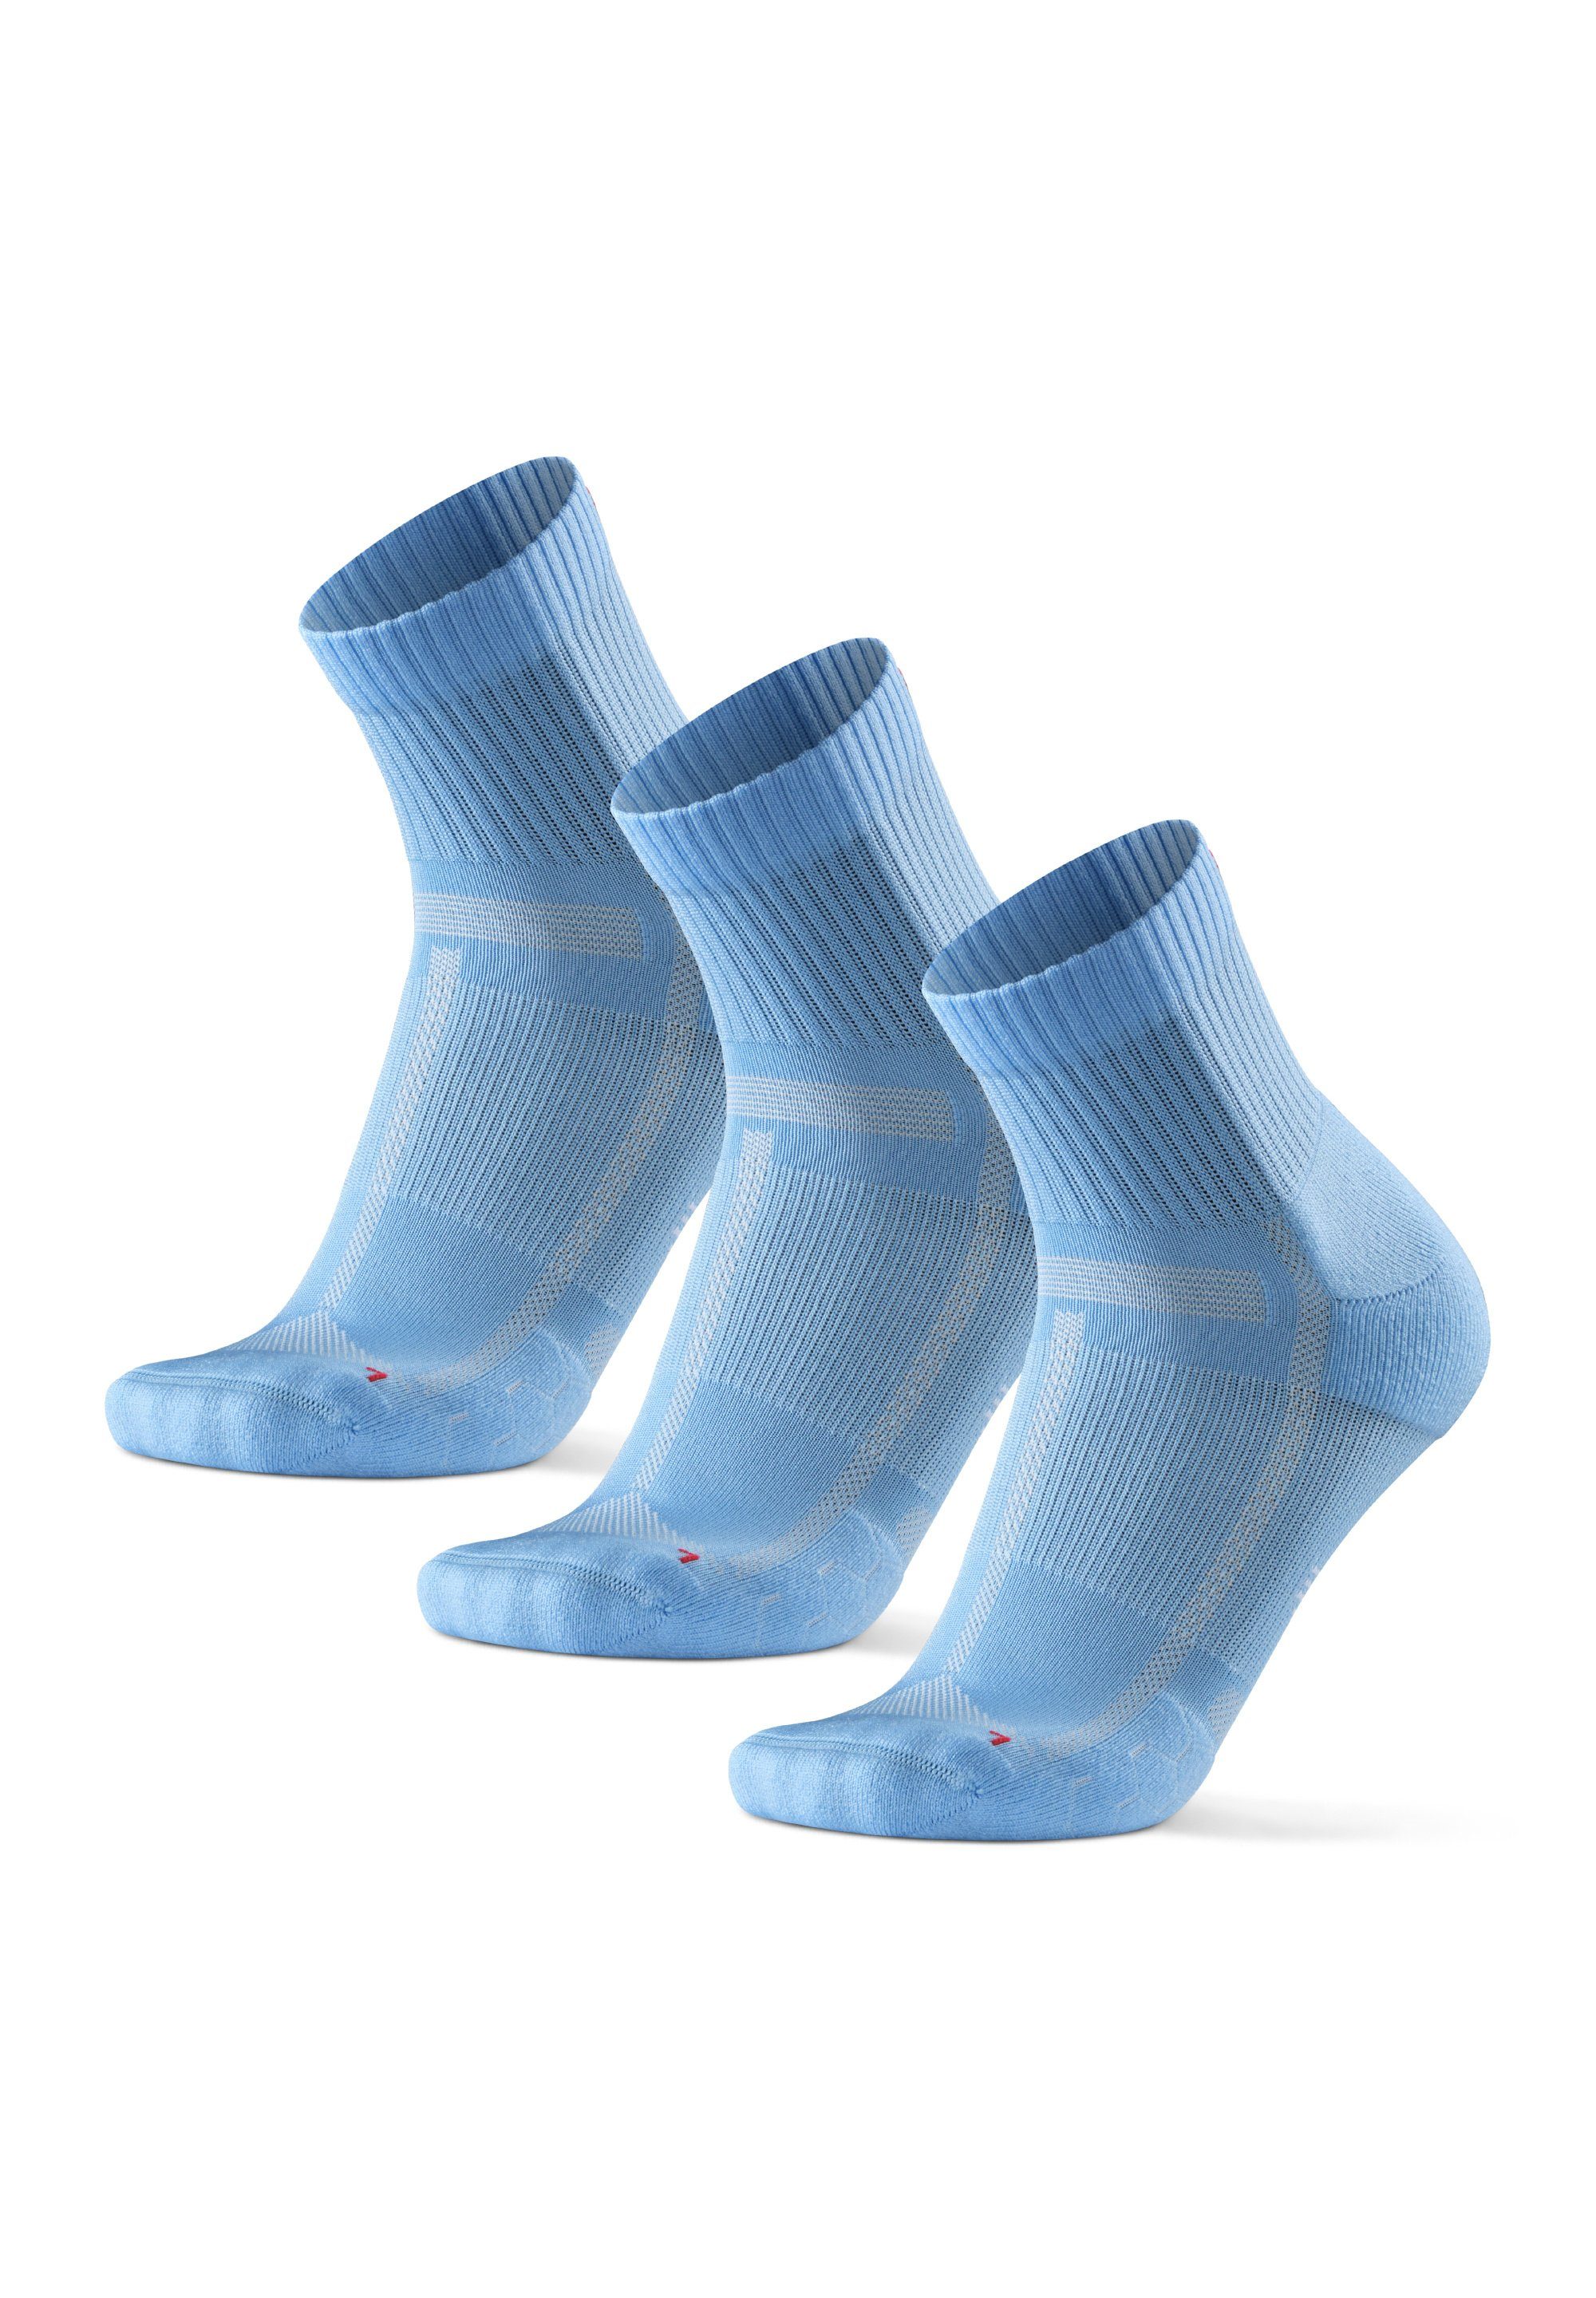 DANISH ENDURANCE Laufsocken Long Distance Running Socks (Packung, 3-Paar) Anti-Blasen, Technisch light blue